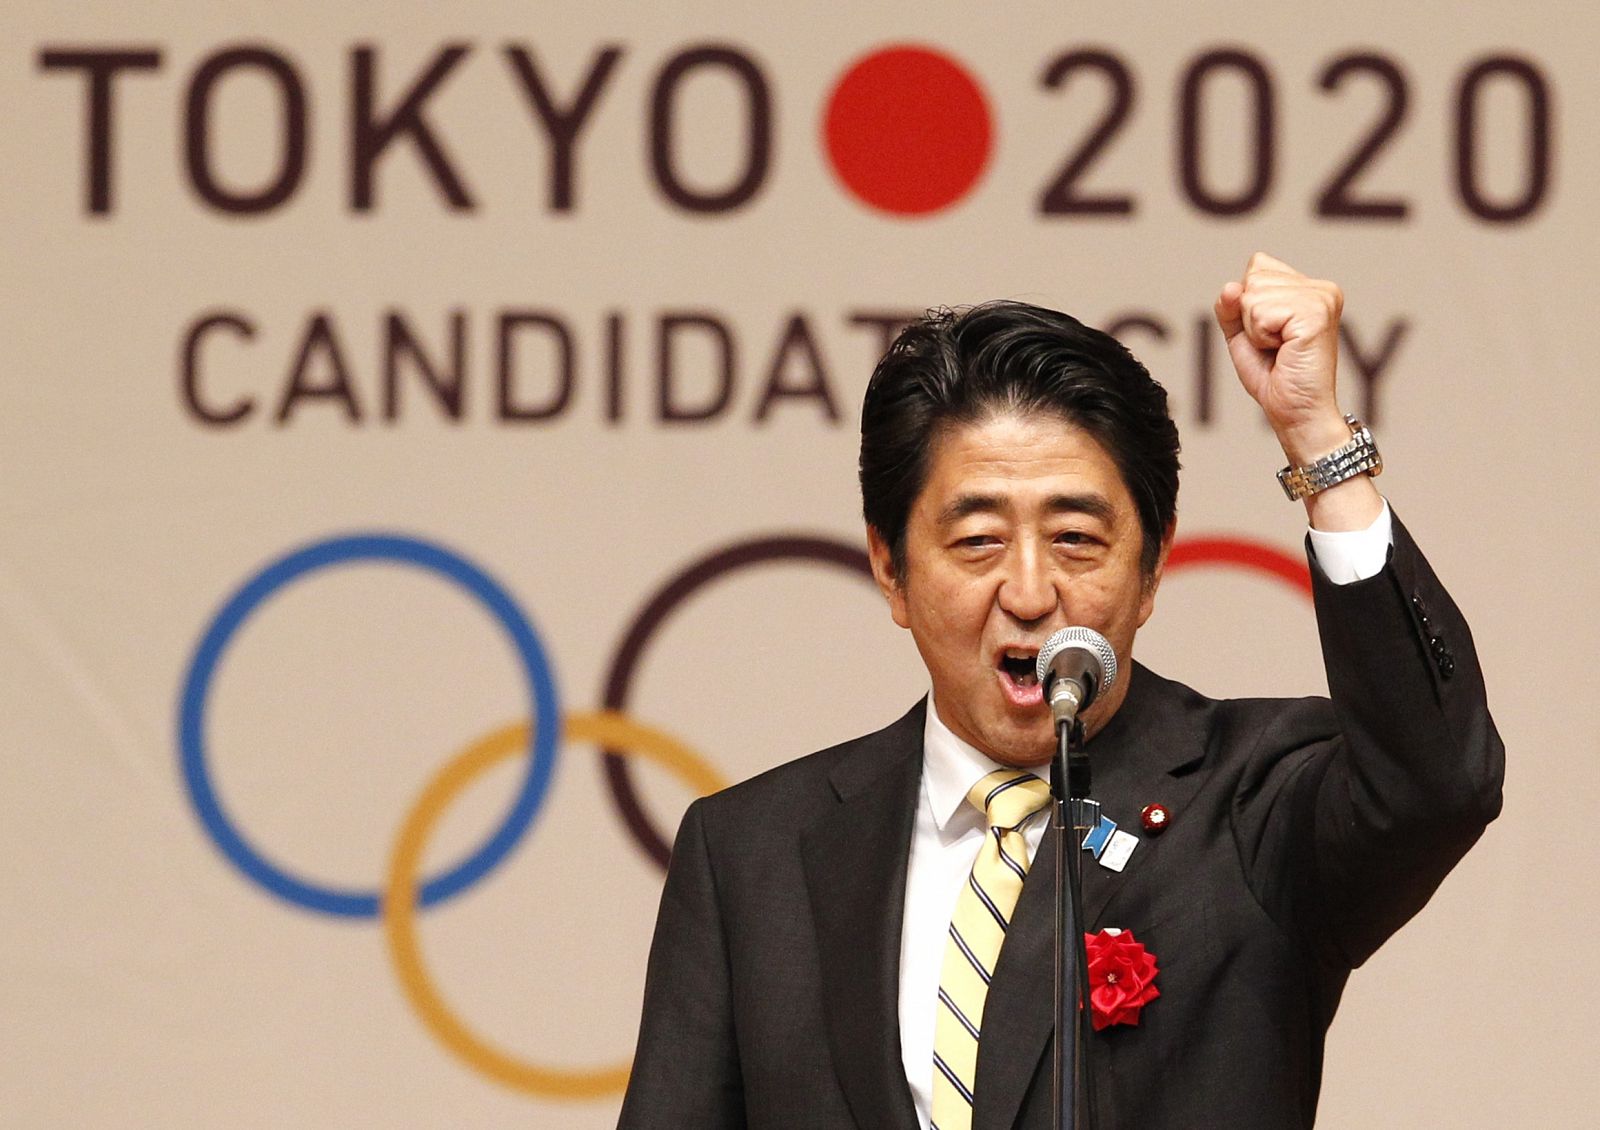 El primer ministro japonés, Shinzo Abe, promociona la candidatura de Tokyo 2020.